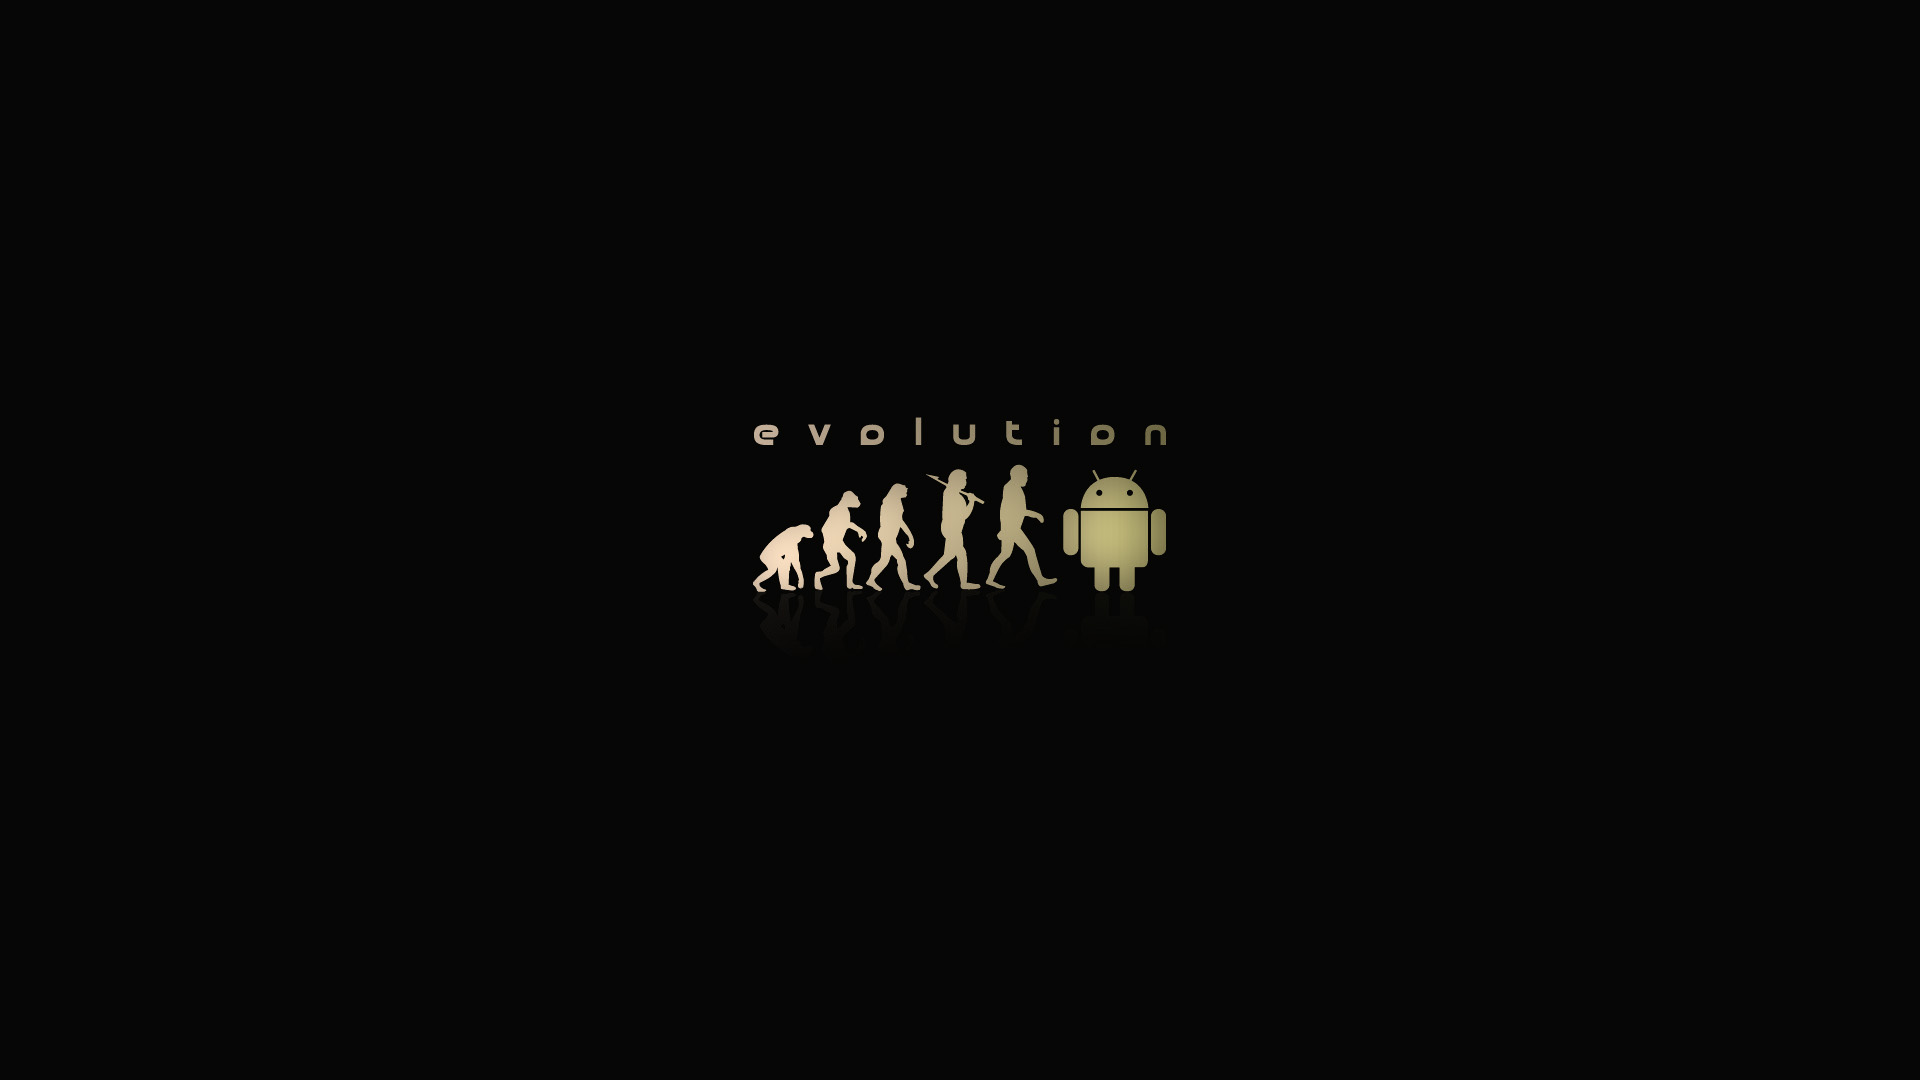 Linux Evolution